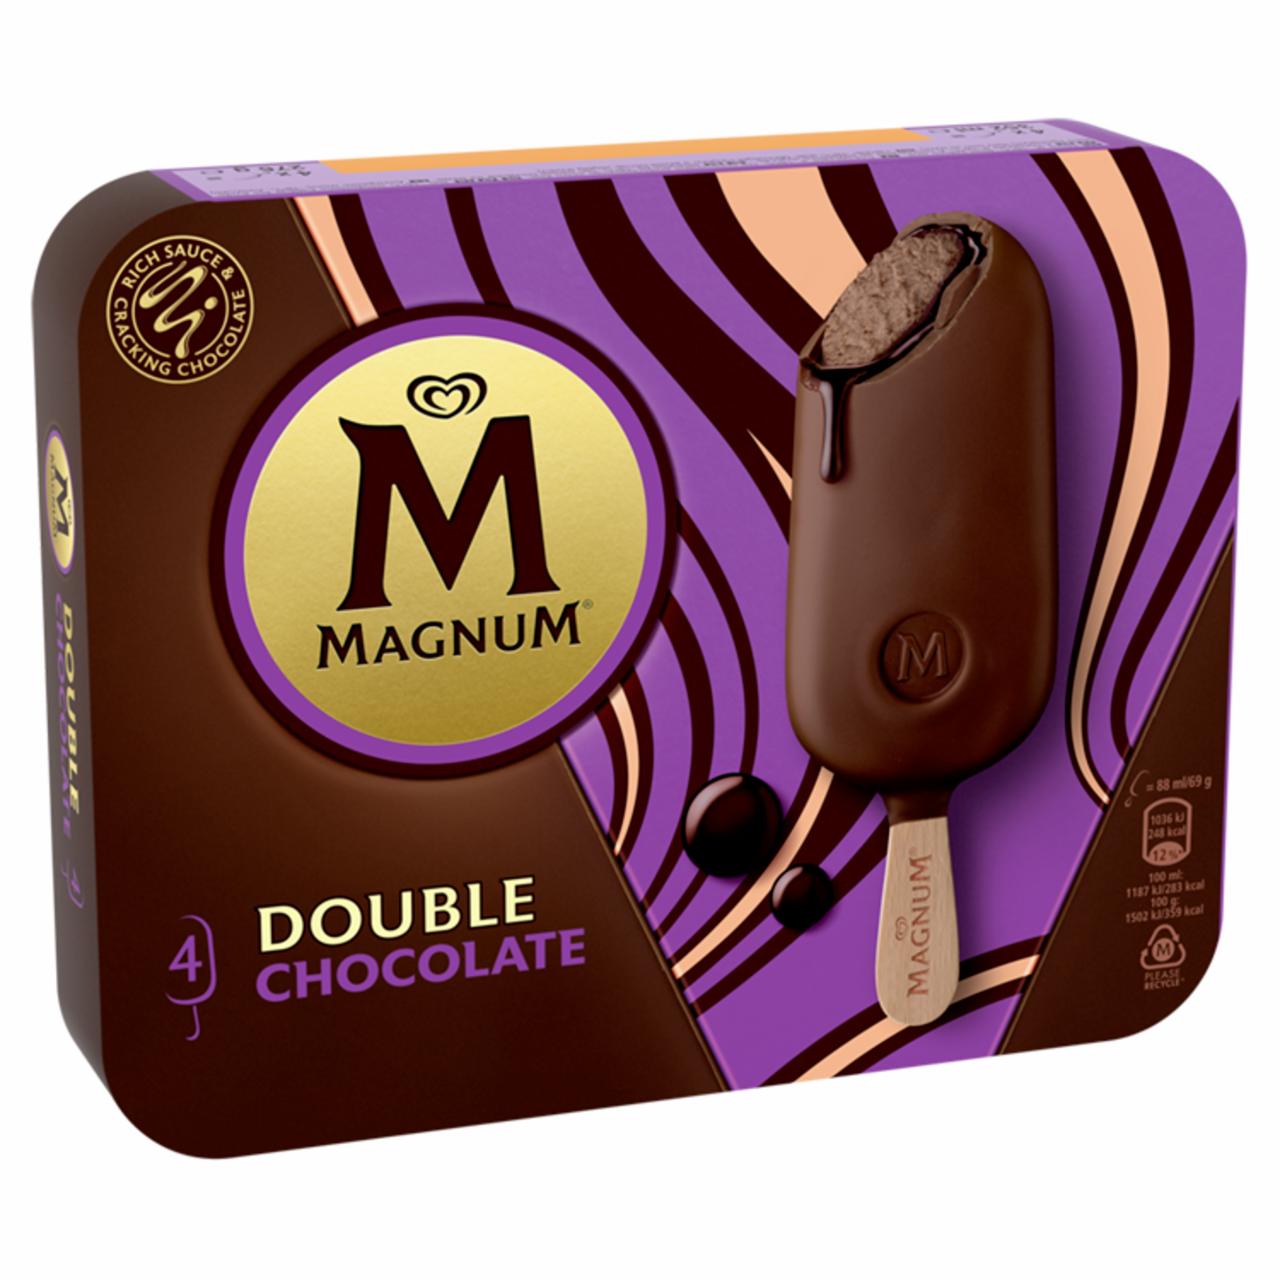 Képek - Magnum multipack jégkrém Dupla Csokoládé 4 x 88 ml